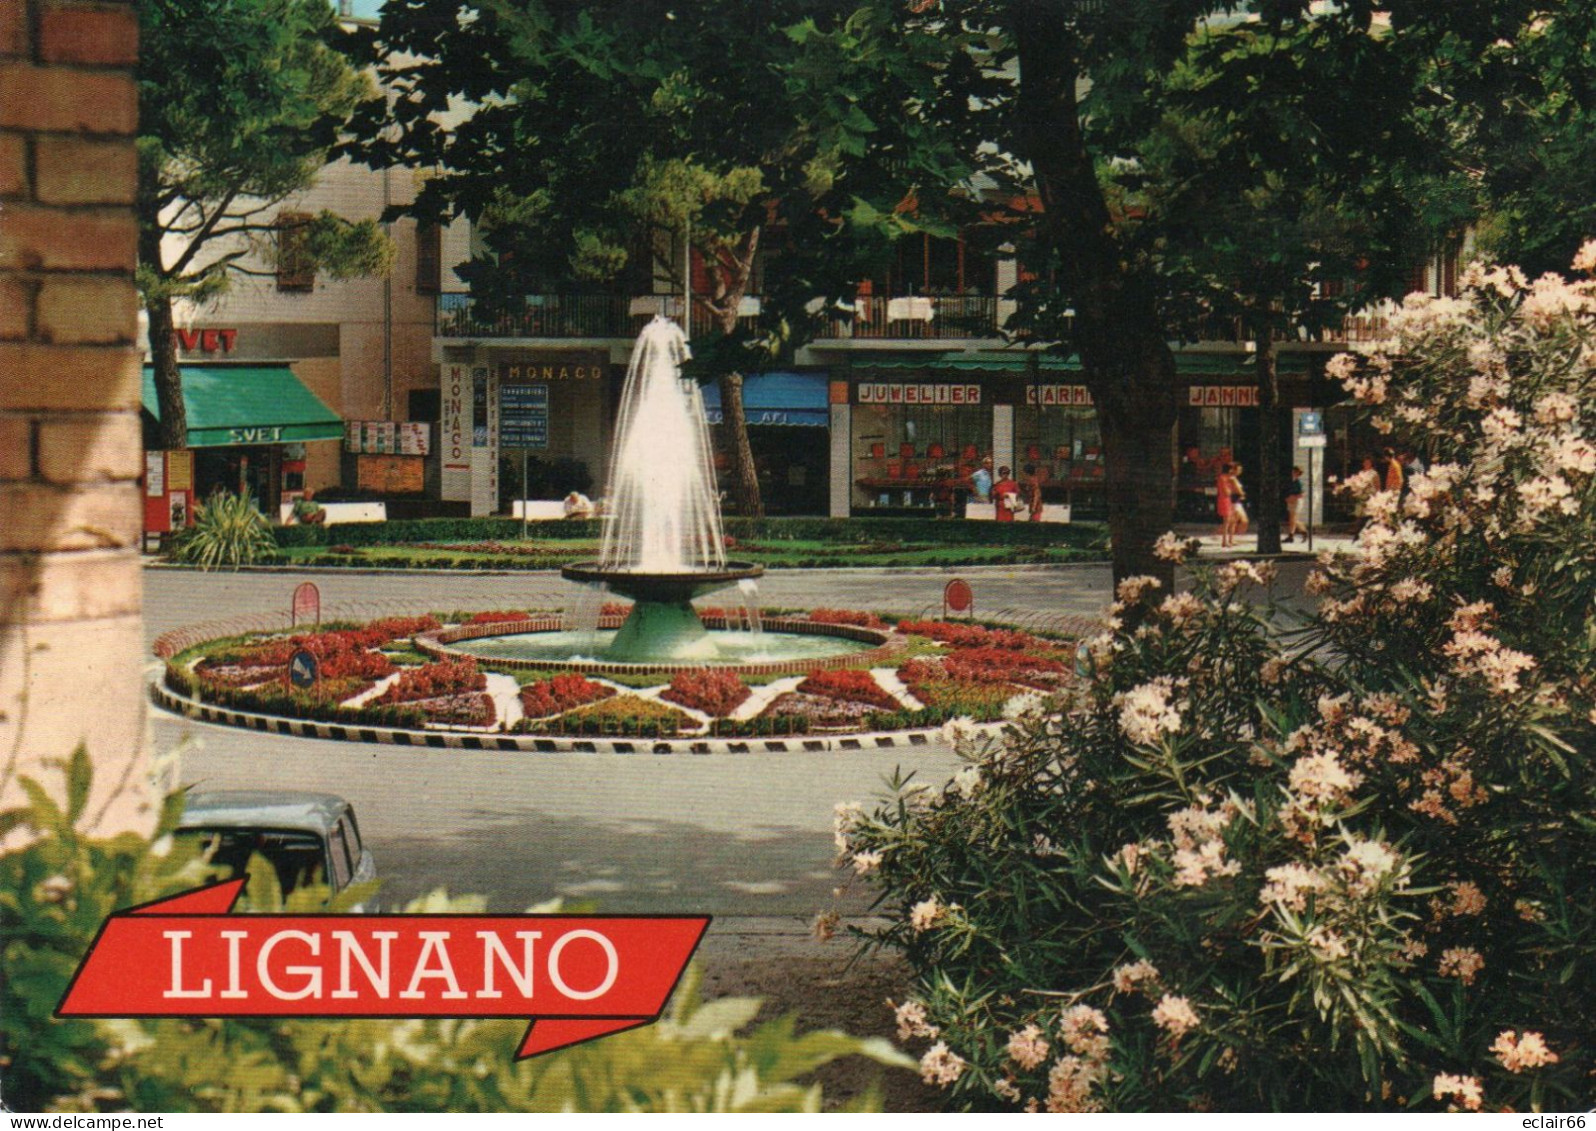 Lignano Sabbiadoro  Commune , De La Province D'Udine, Dans La Région Autonome Du Frioul-Vénétie Julienne En Italie. - Udine